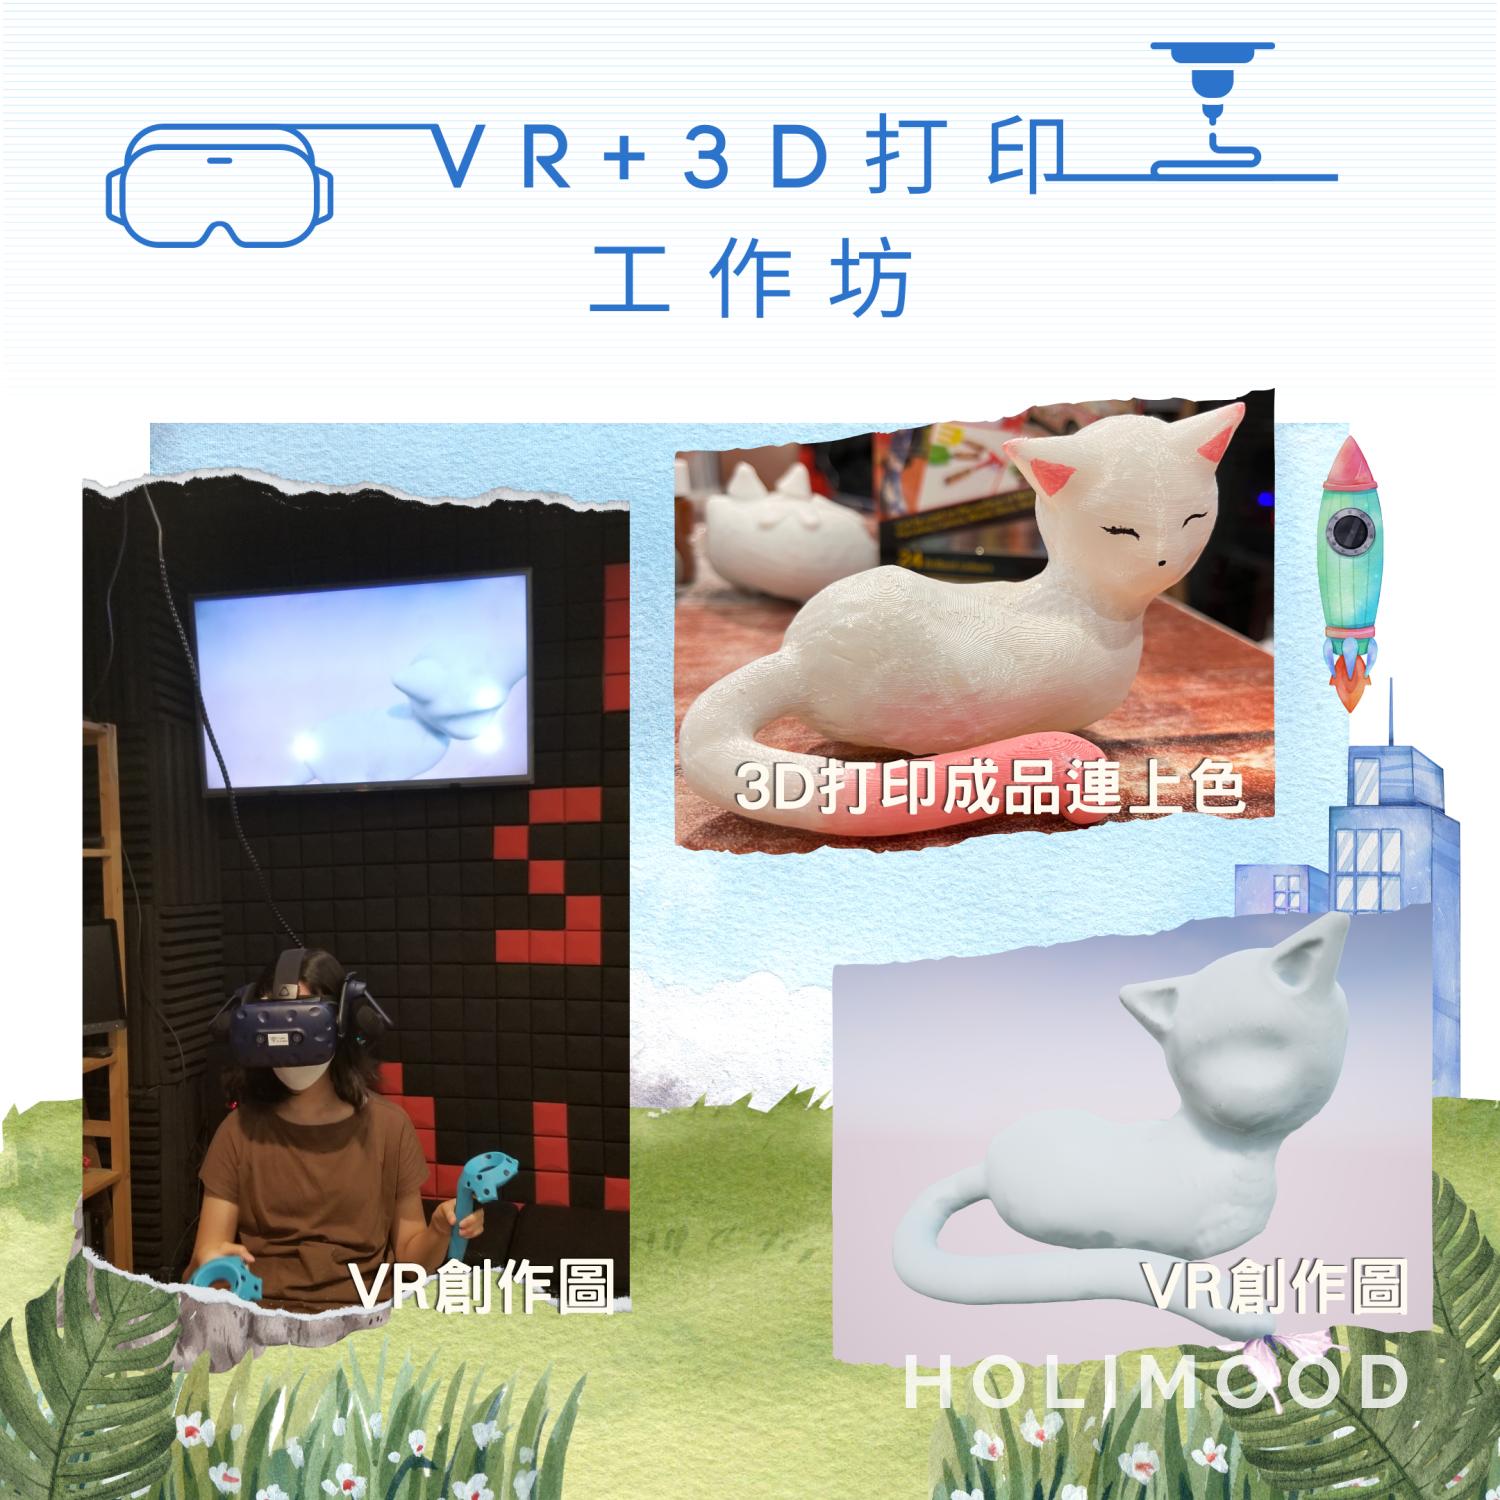 V-Owl Station VR Party 虛擬實境體驗站 VR+3D打印工作坊 8